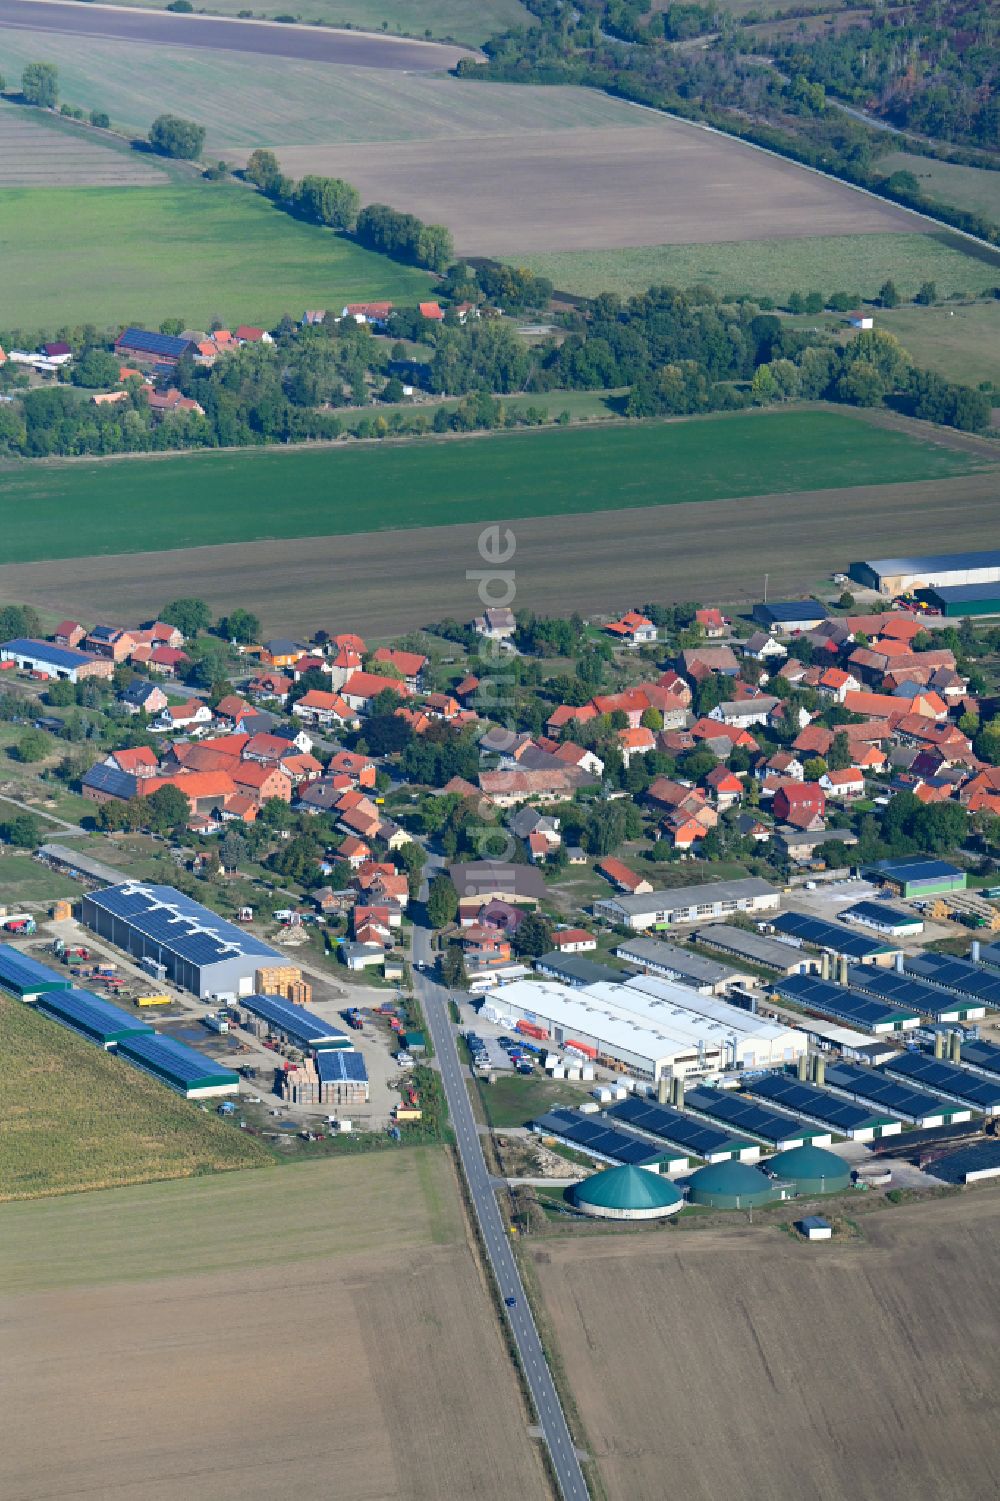 Luftaufnahme Bühne - Dorfkern am Feldrand in Bühne im Bundesland Sachsen-Anhalt, Deutschland